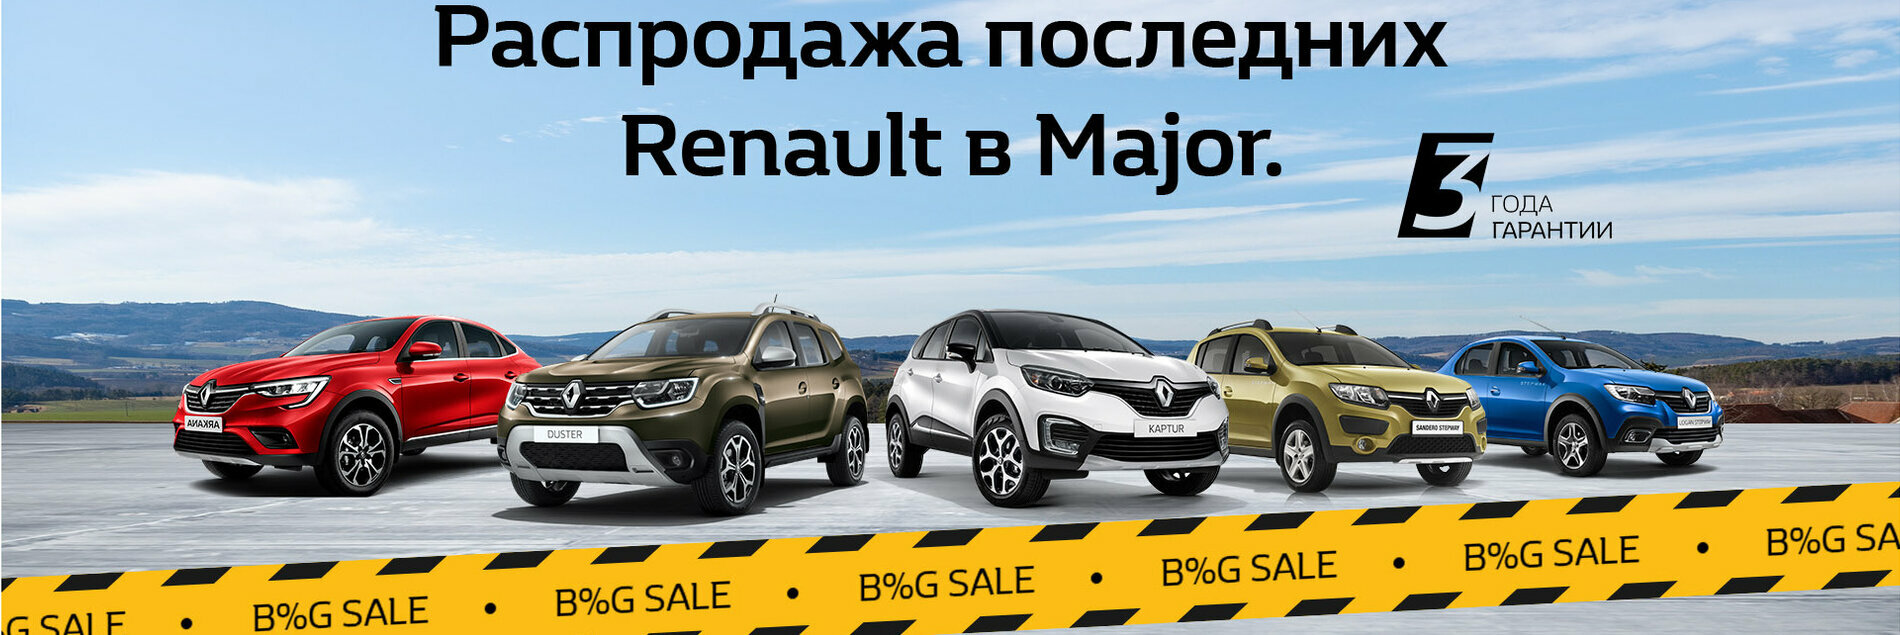 Глобальная реализация Renault в Major.